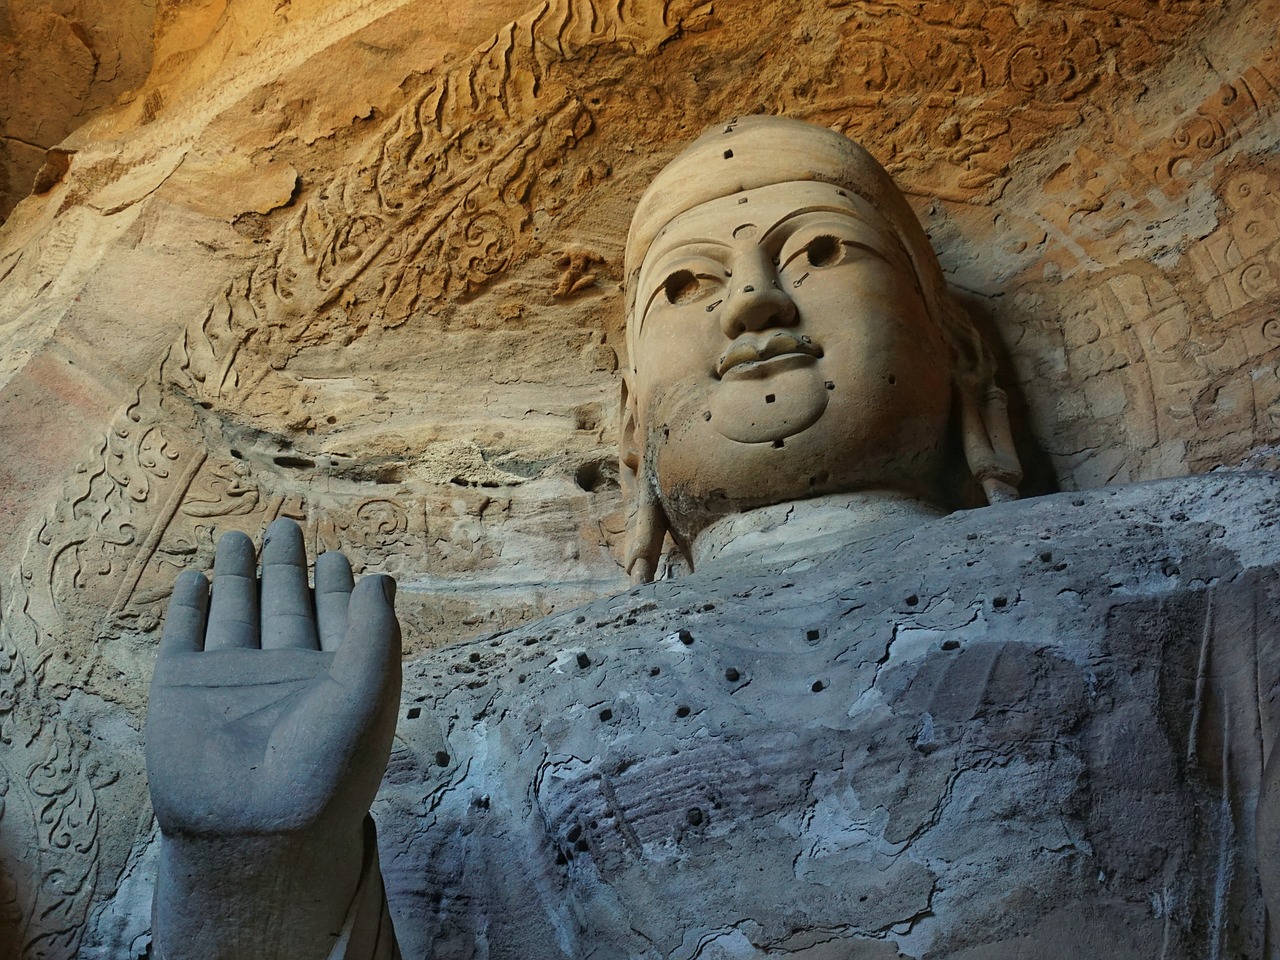 grotto buddha statues datong free photo